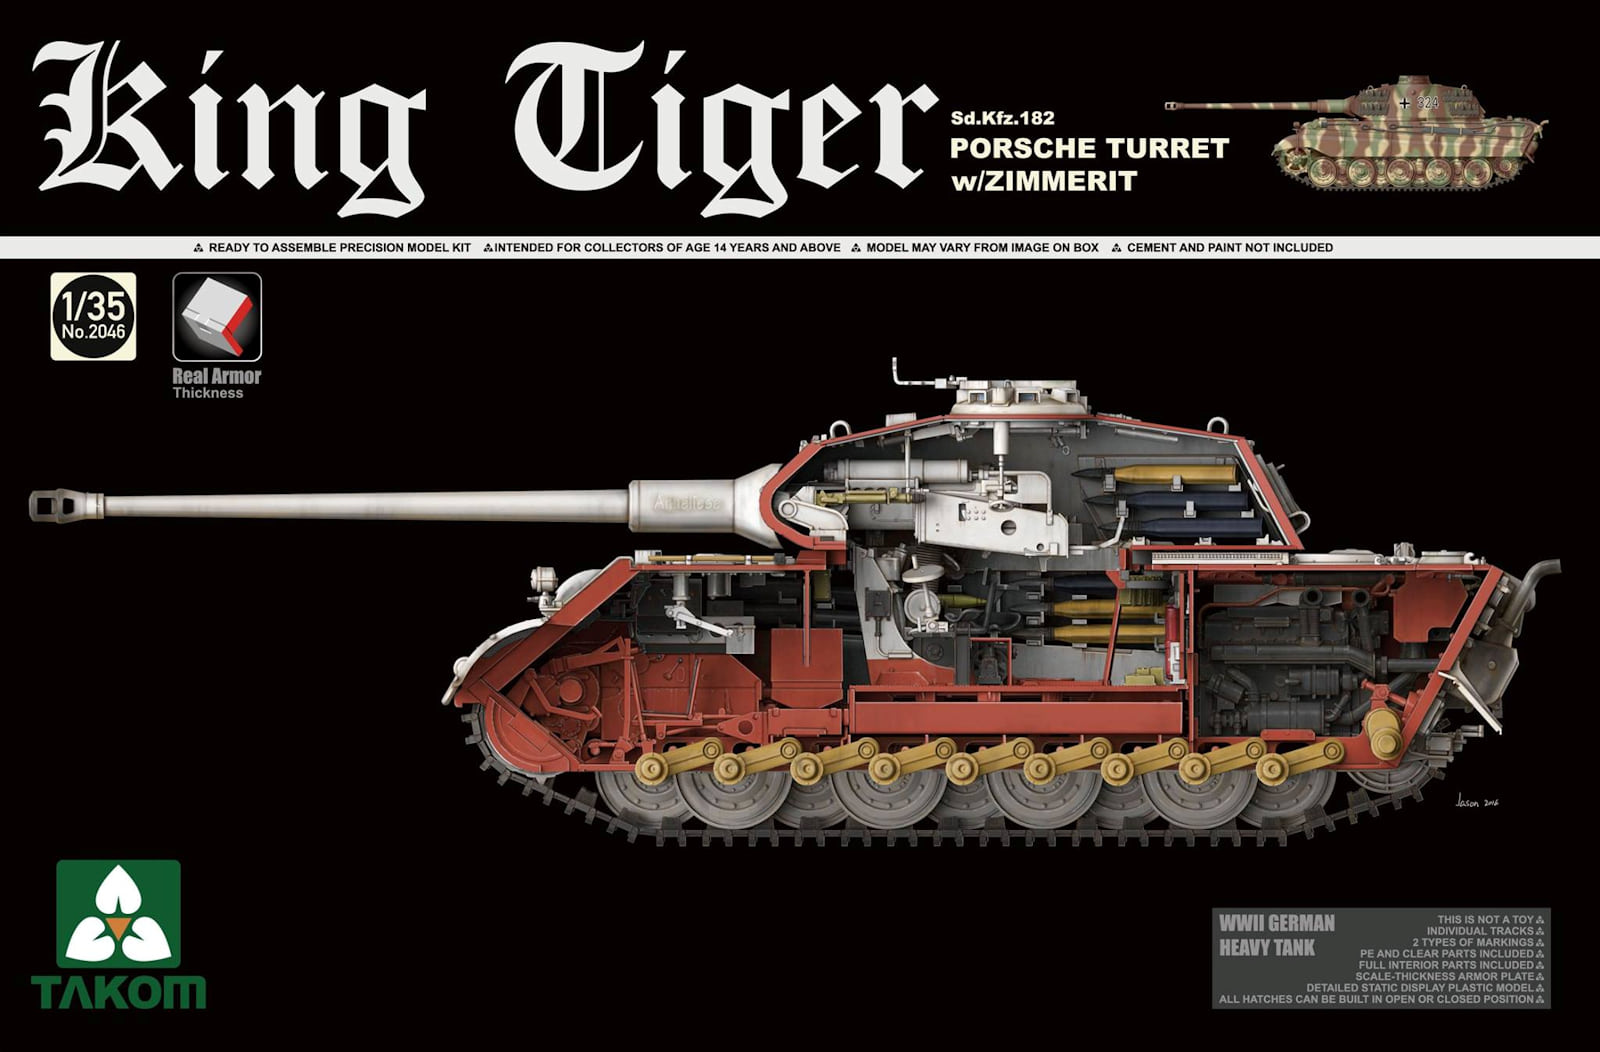 1/35 WWII German Heavy Tank Sd.Kfz.1 King Tiger Porsche Turret w/Zimmerit